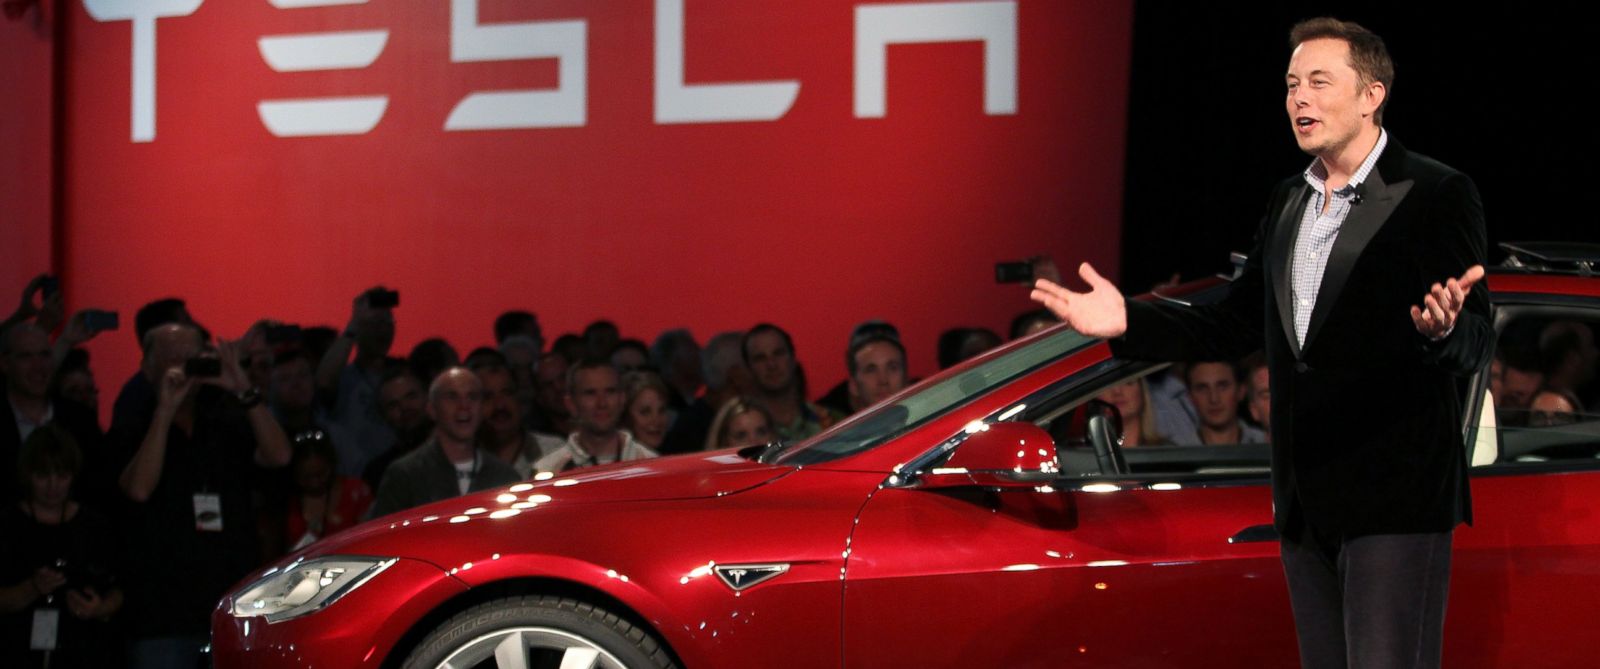 Βίντεο: Ο πολυεκατομμυριούχος Έλον Μασκ παρουσιάζει το νέο αυτοκίνητο της Tesla